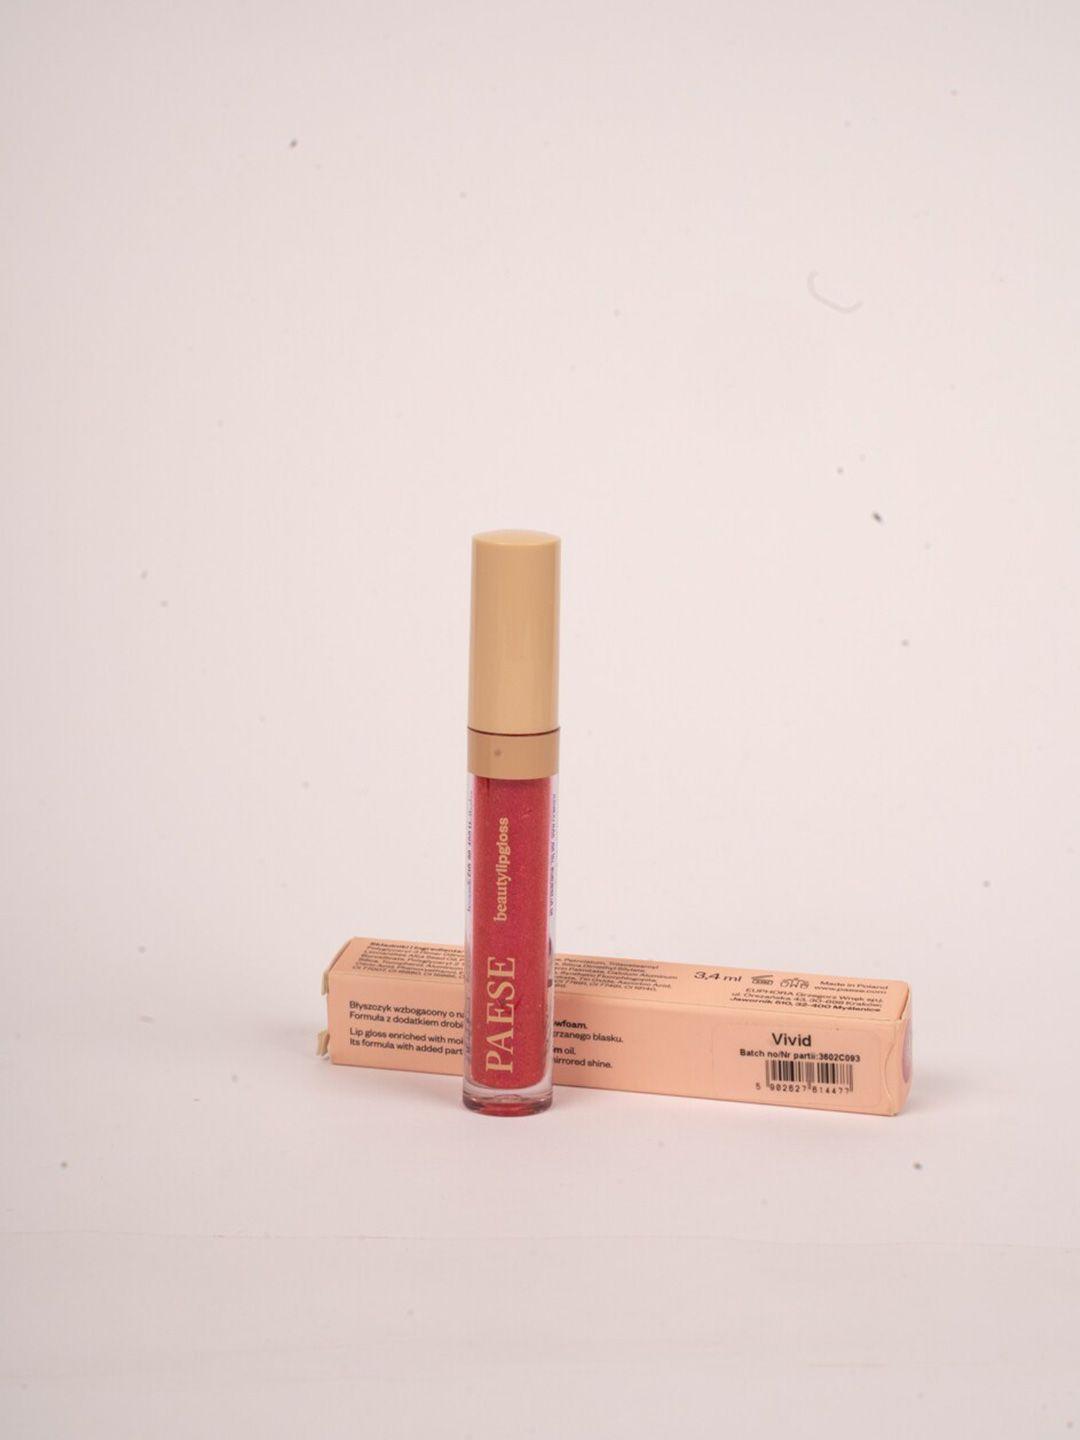 paese cosmetics beauty lip gloss 3.4 ml - glazed 5